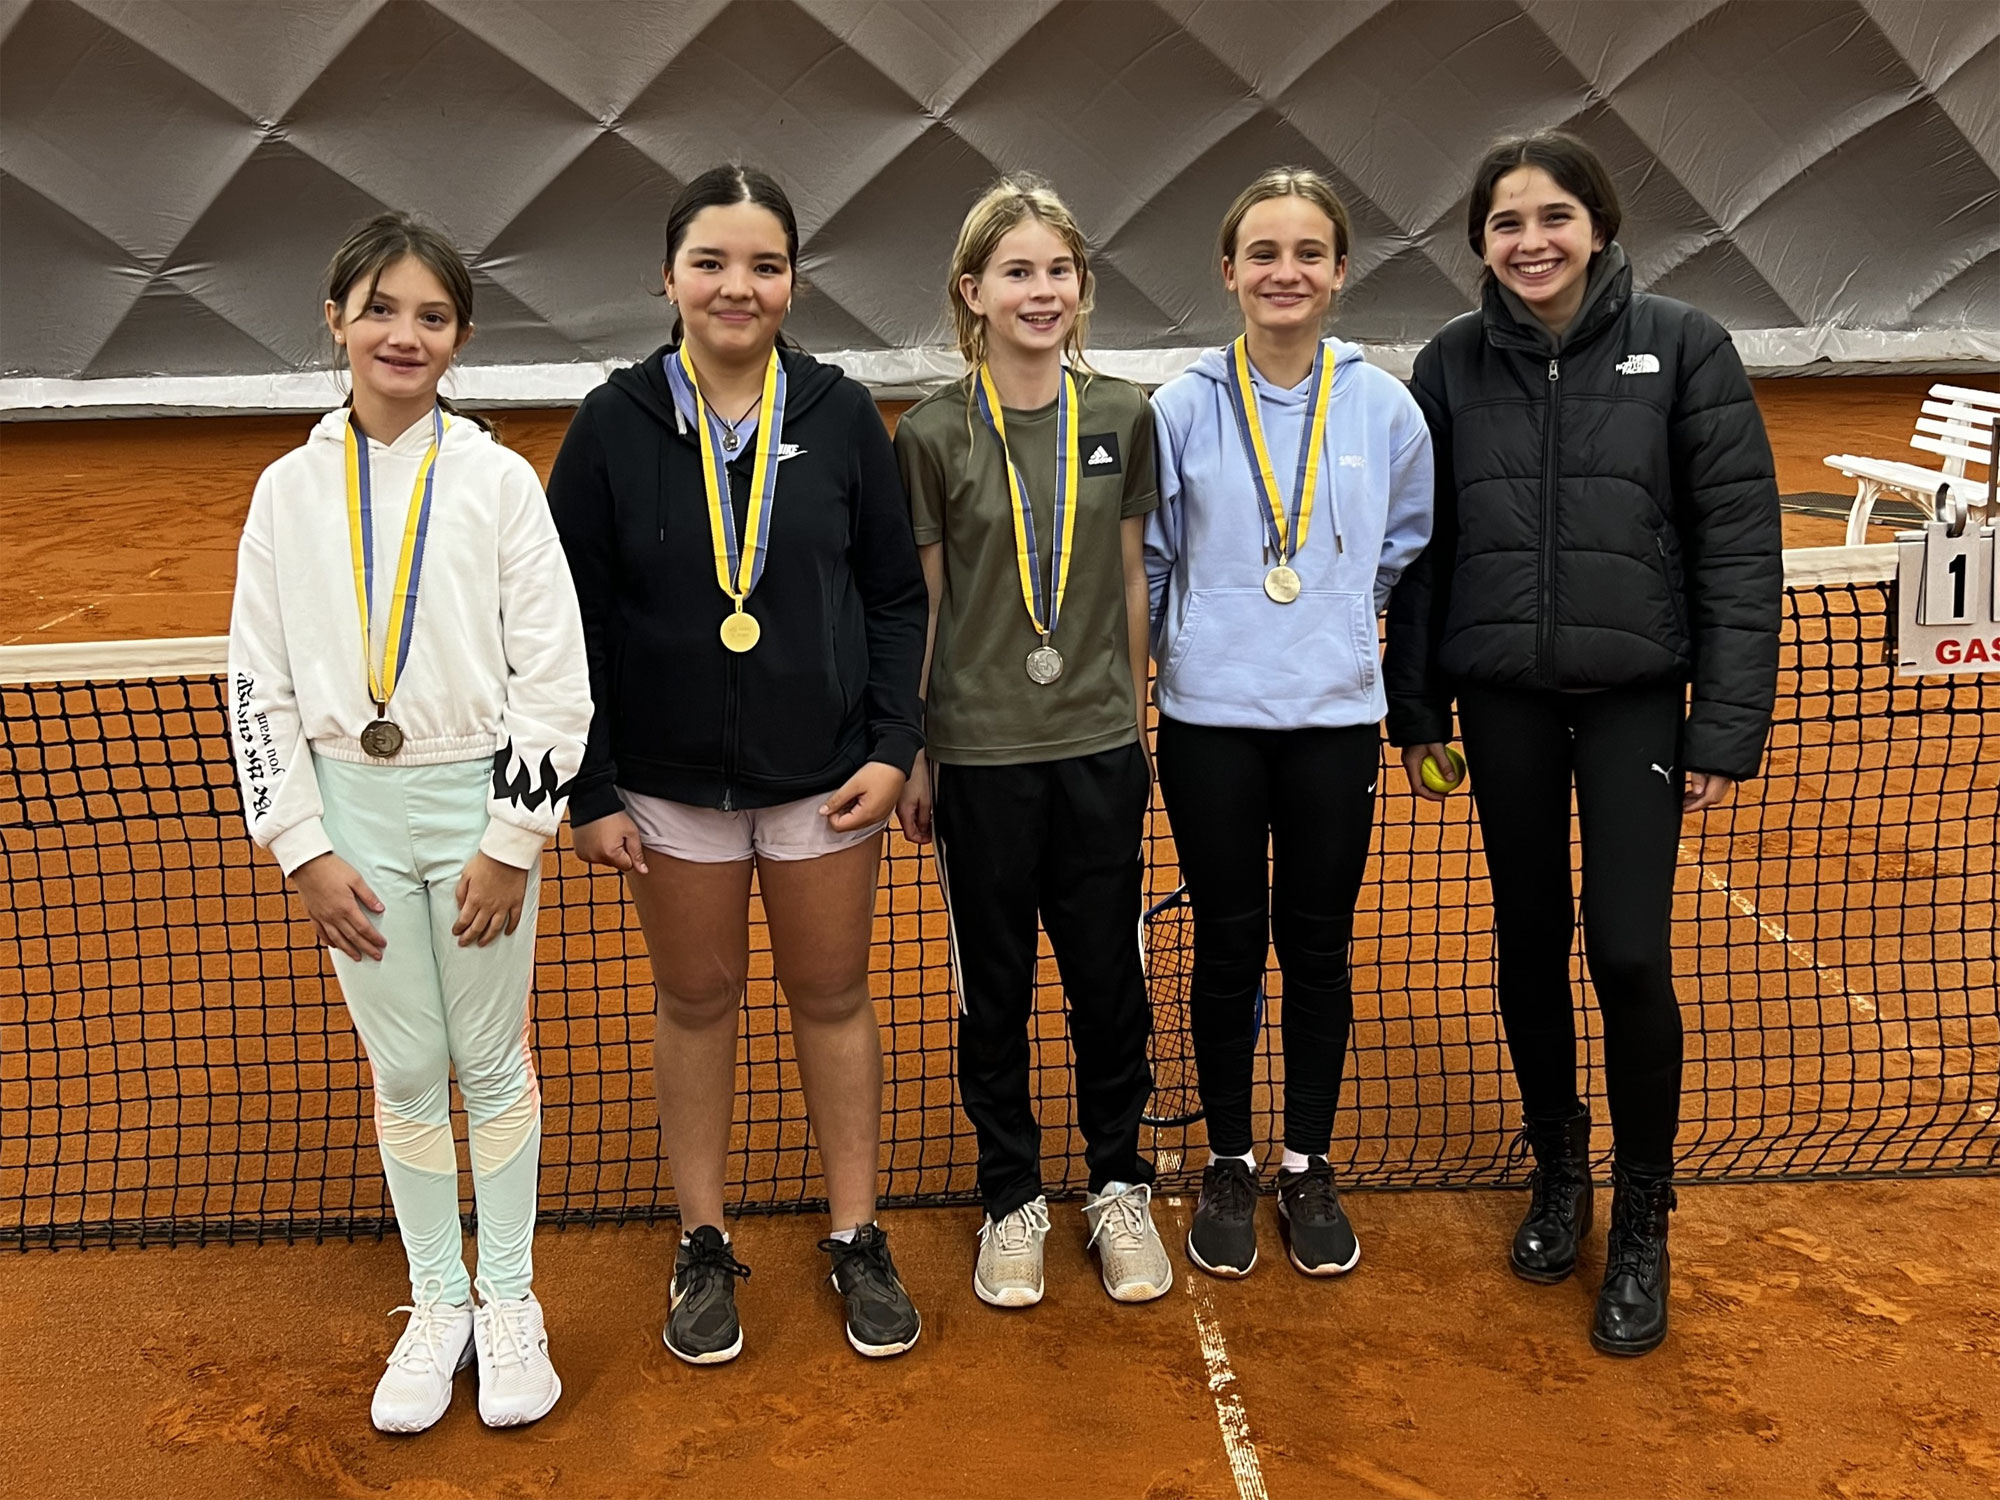 WS 14&U: Anouk Gorlier (4. Platz), Nyilha Battaglia (1.), Soraya Hougen (2.), Ladina Schwarz (3.), Margarida Ferreira Teixeira (5.)